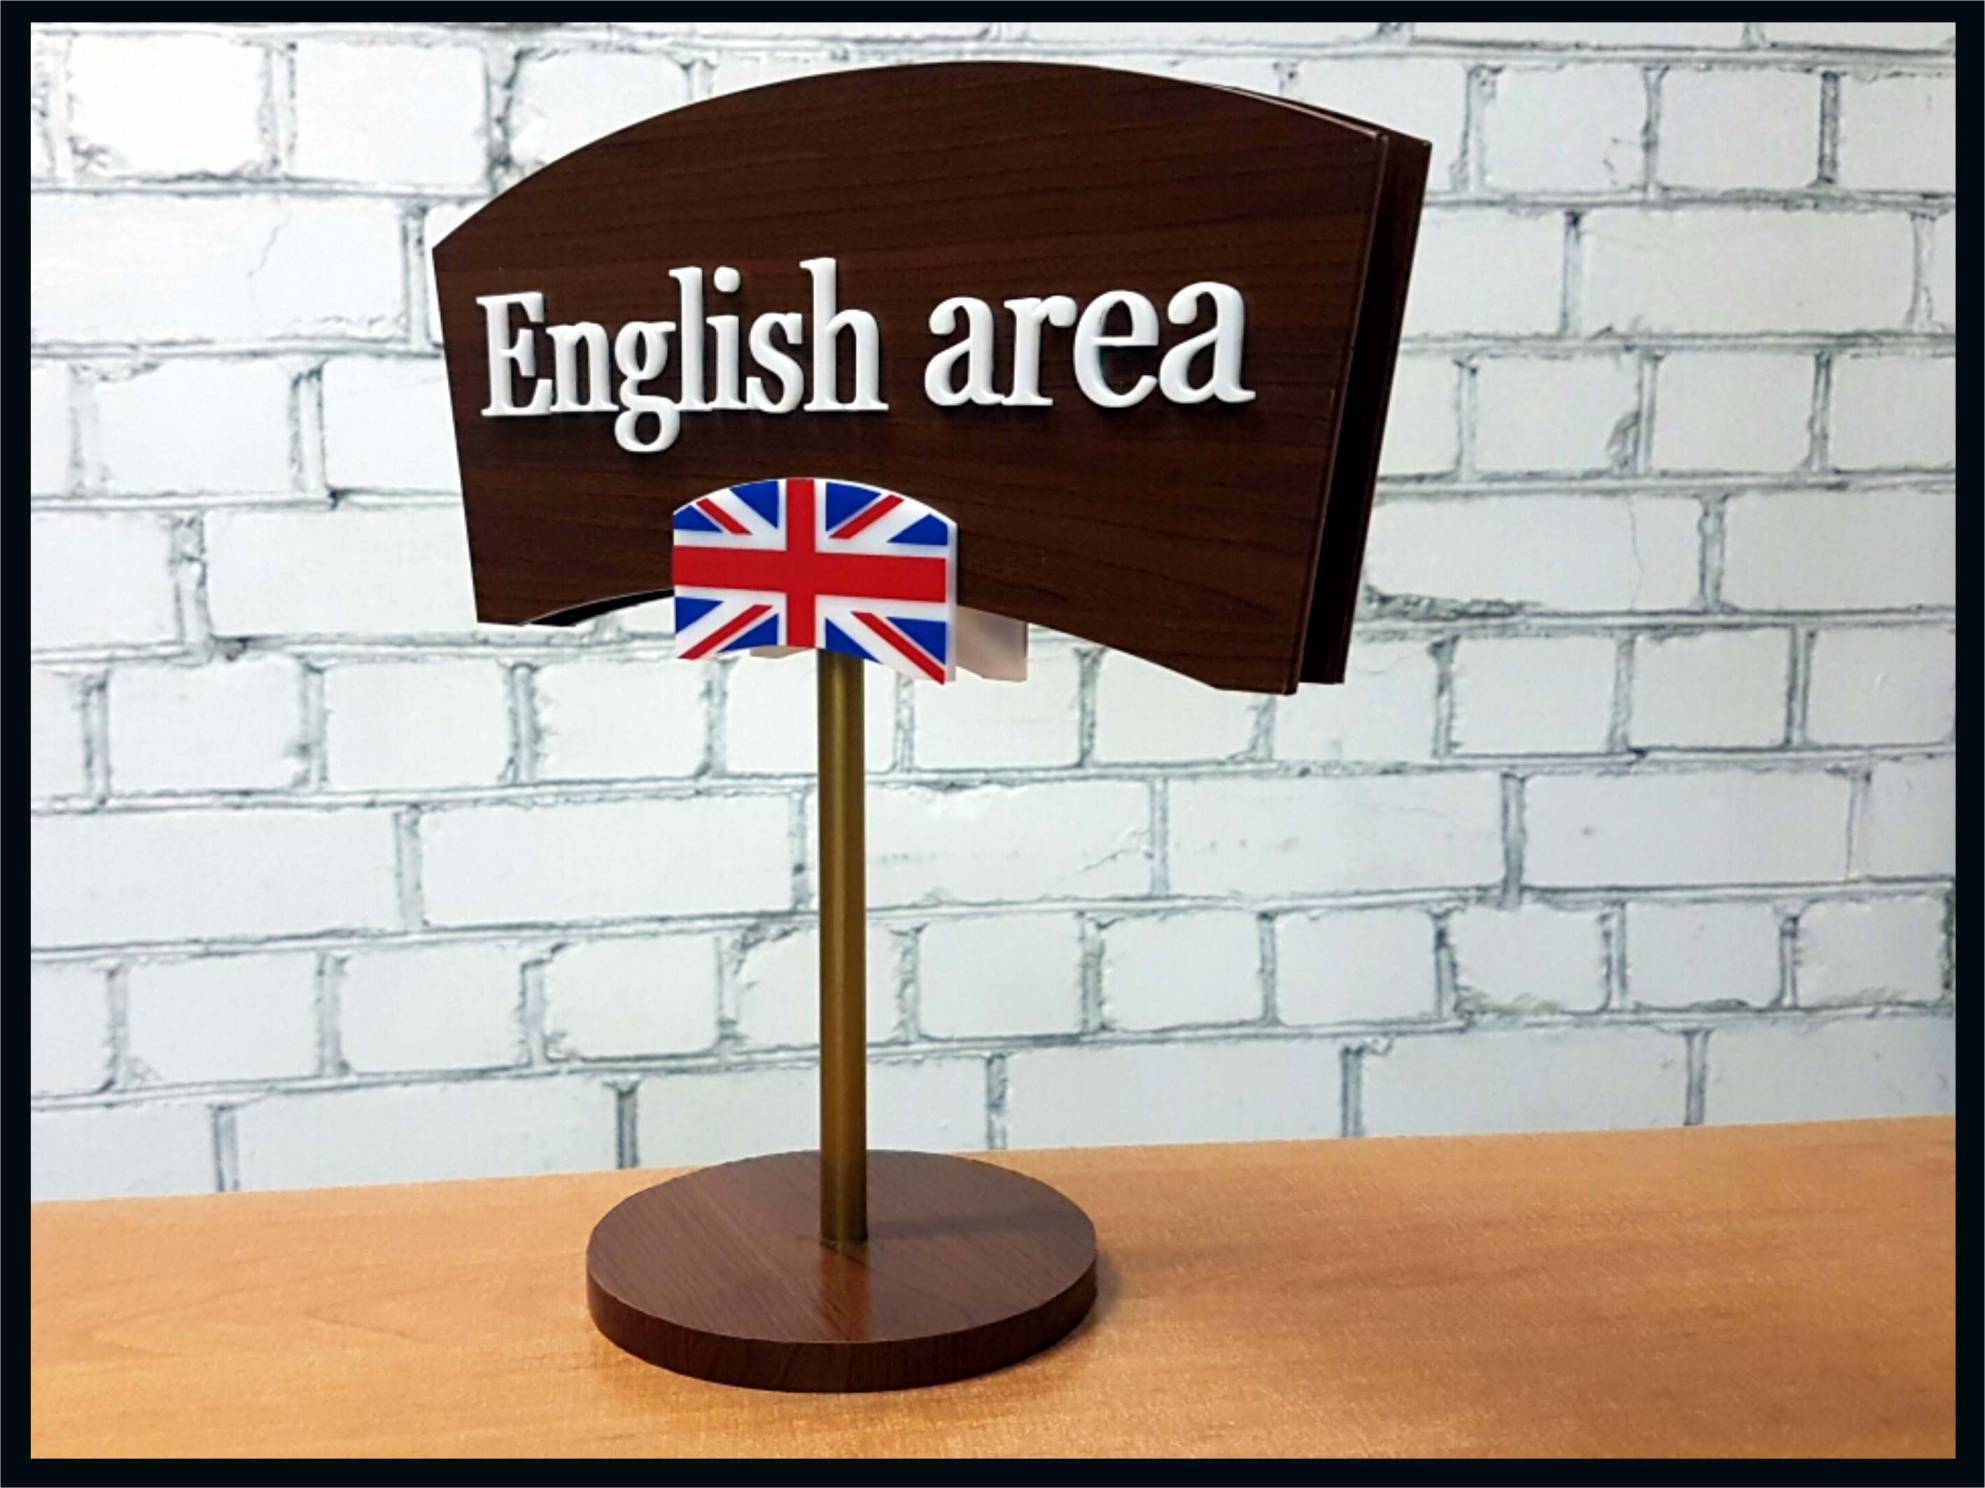 English area